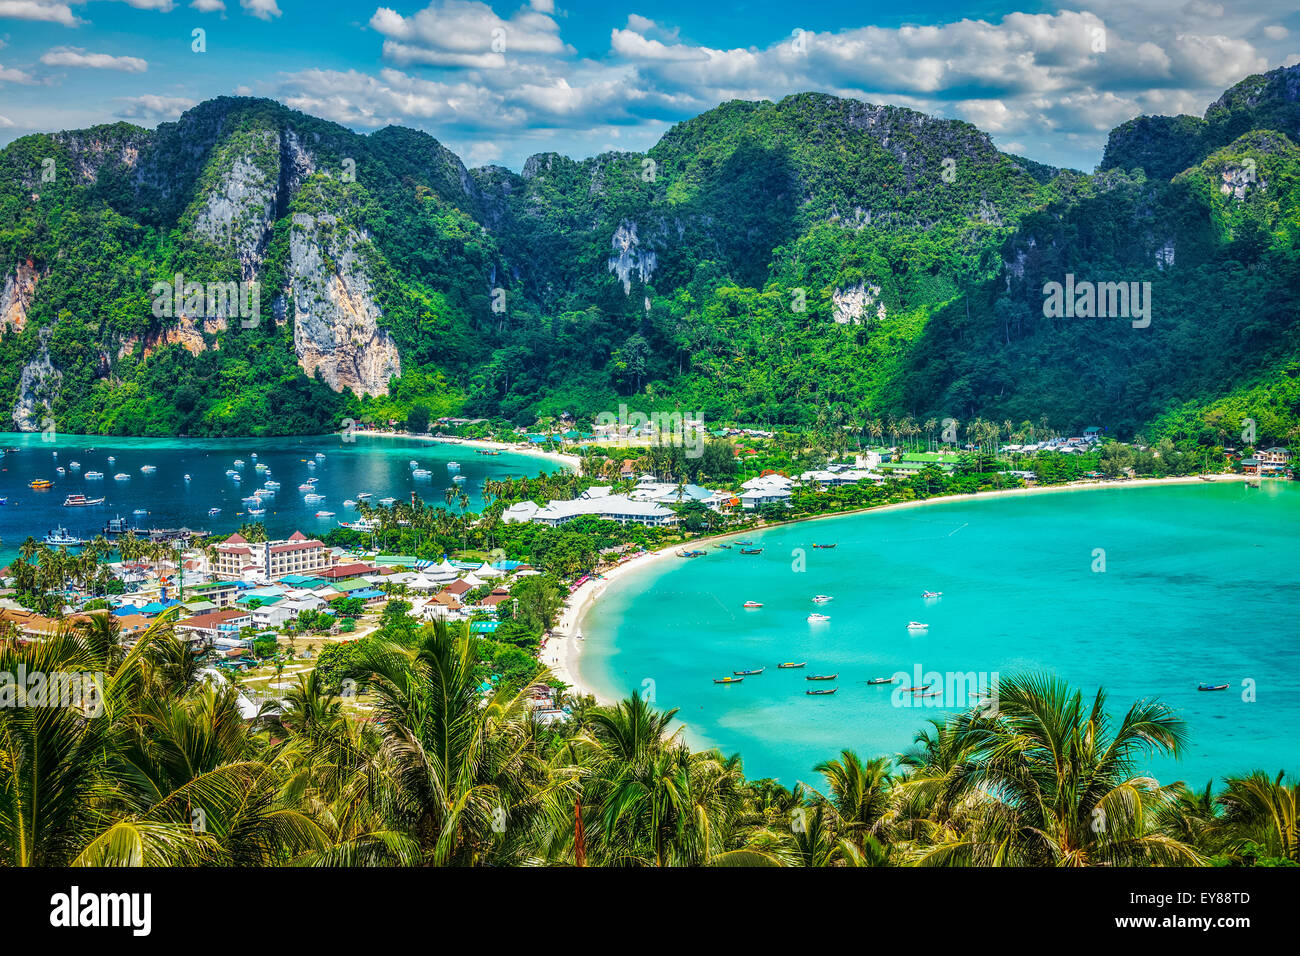 Reisen Sie Urlaub Hintergrund - tropische Insel mit Resorts - Phi-Phi-Insel, Provinz Krabi, Thailand Stockfoto